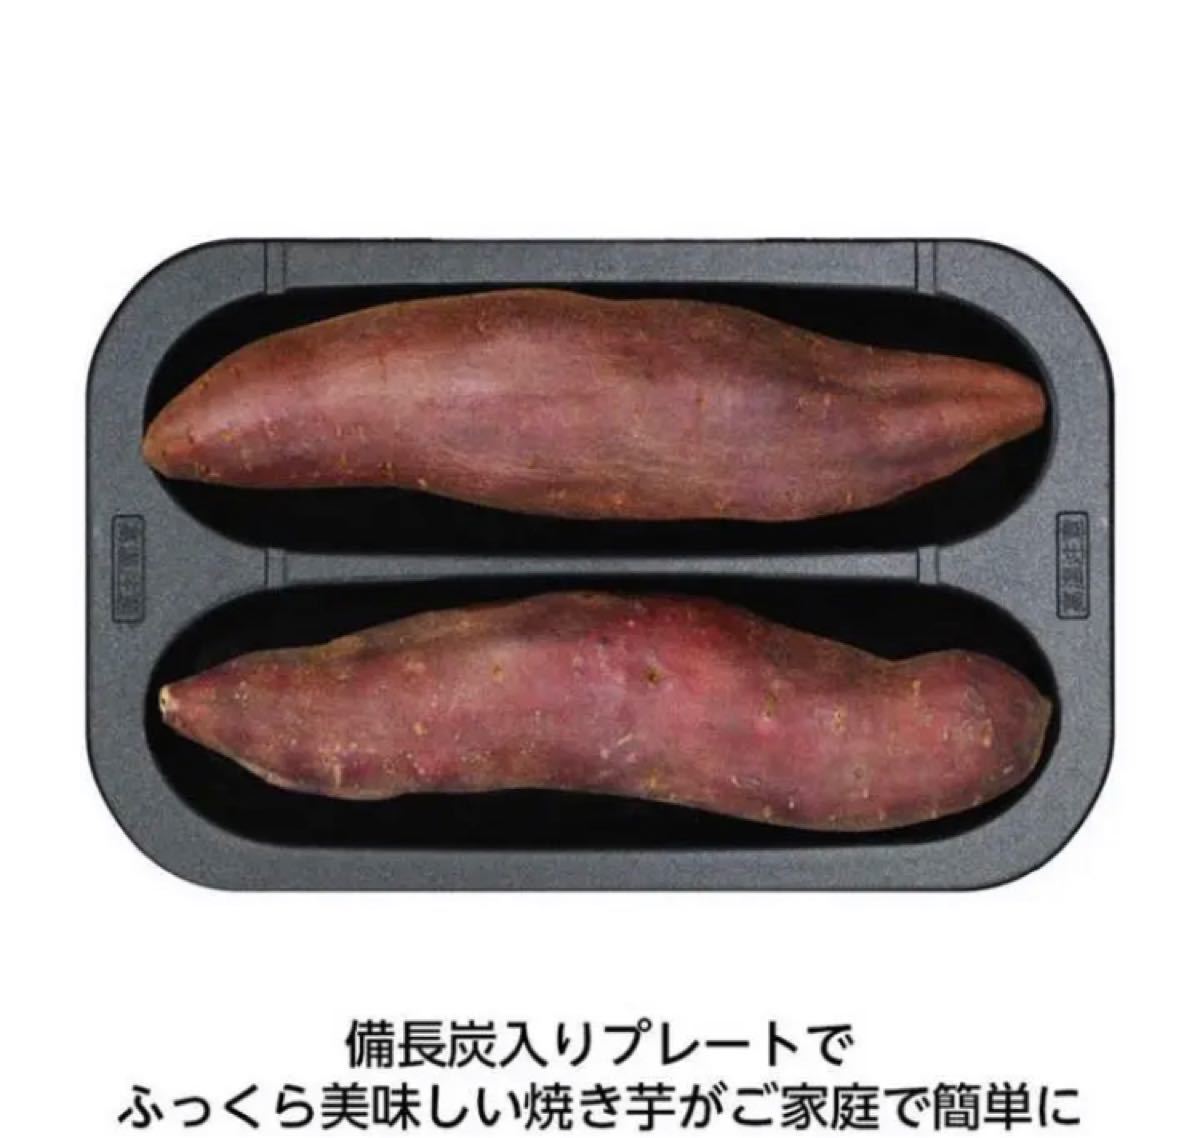 【 新品未開封 】ドウシシャ 焼き芋メーカー WFV-102T